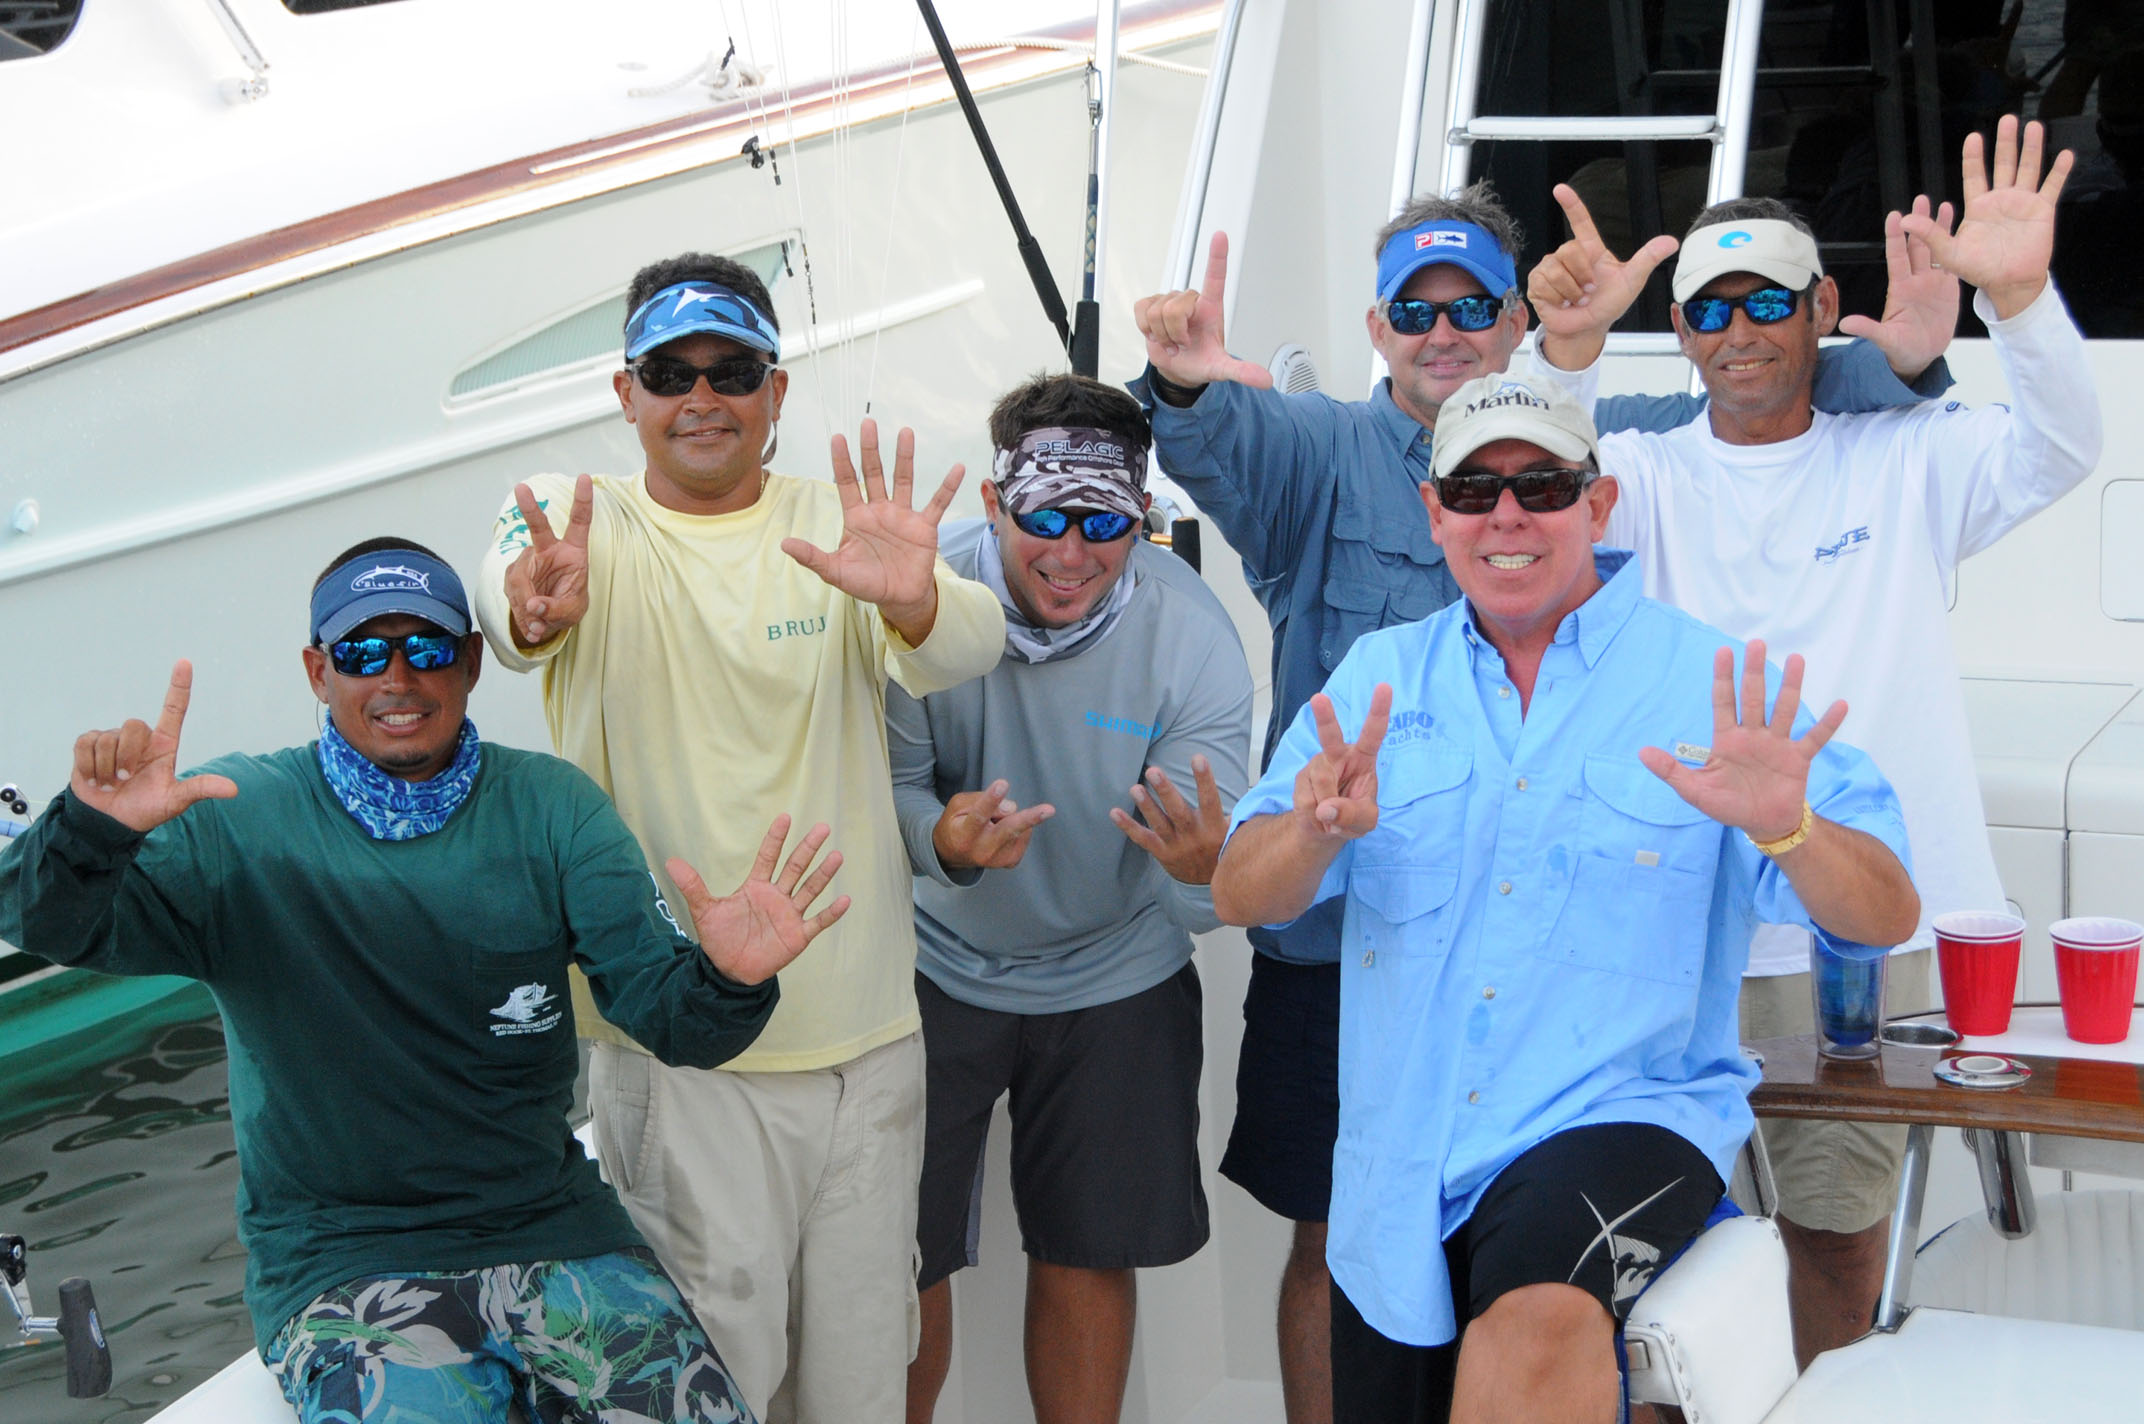 Puerto Rico’s Peje wins Top Boat in the ABMT. L to R: William Oquendo, Capt. Juan Antonio Garcia, Javier Aldrey, Jose Pazos, Carlos Garcia and Carlos Chapel.